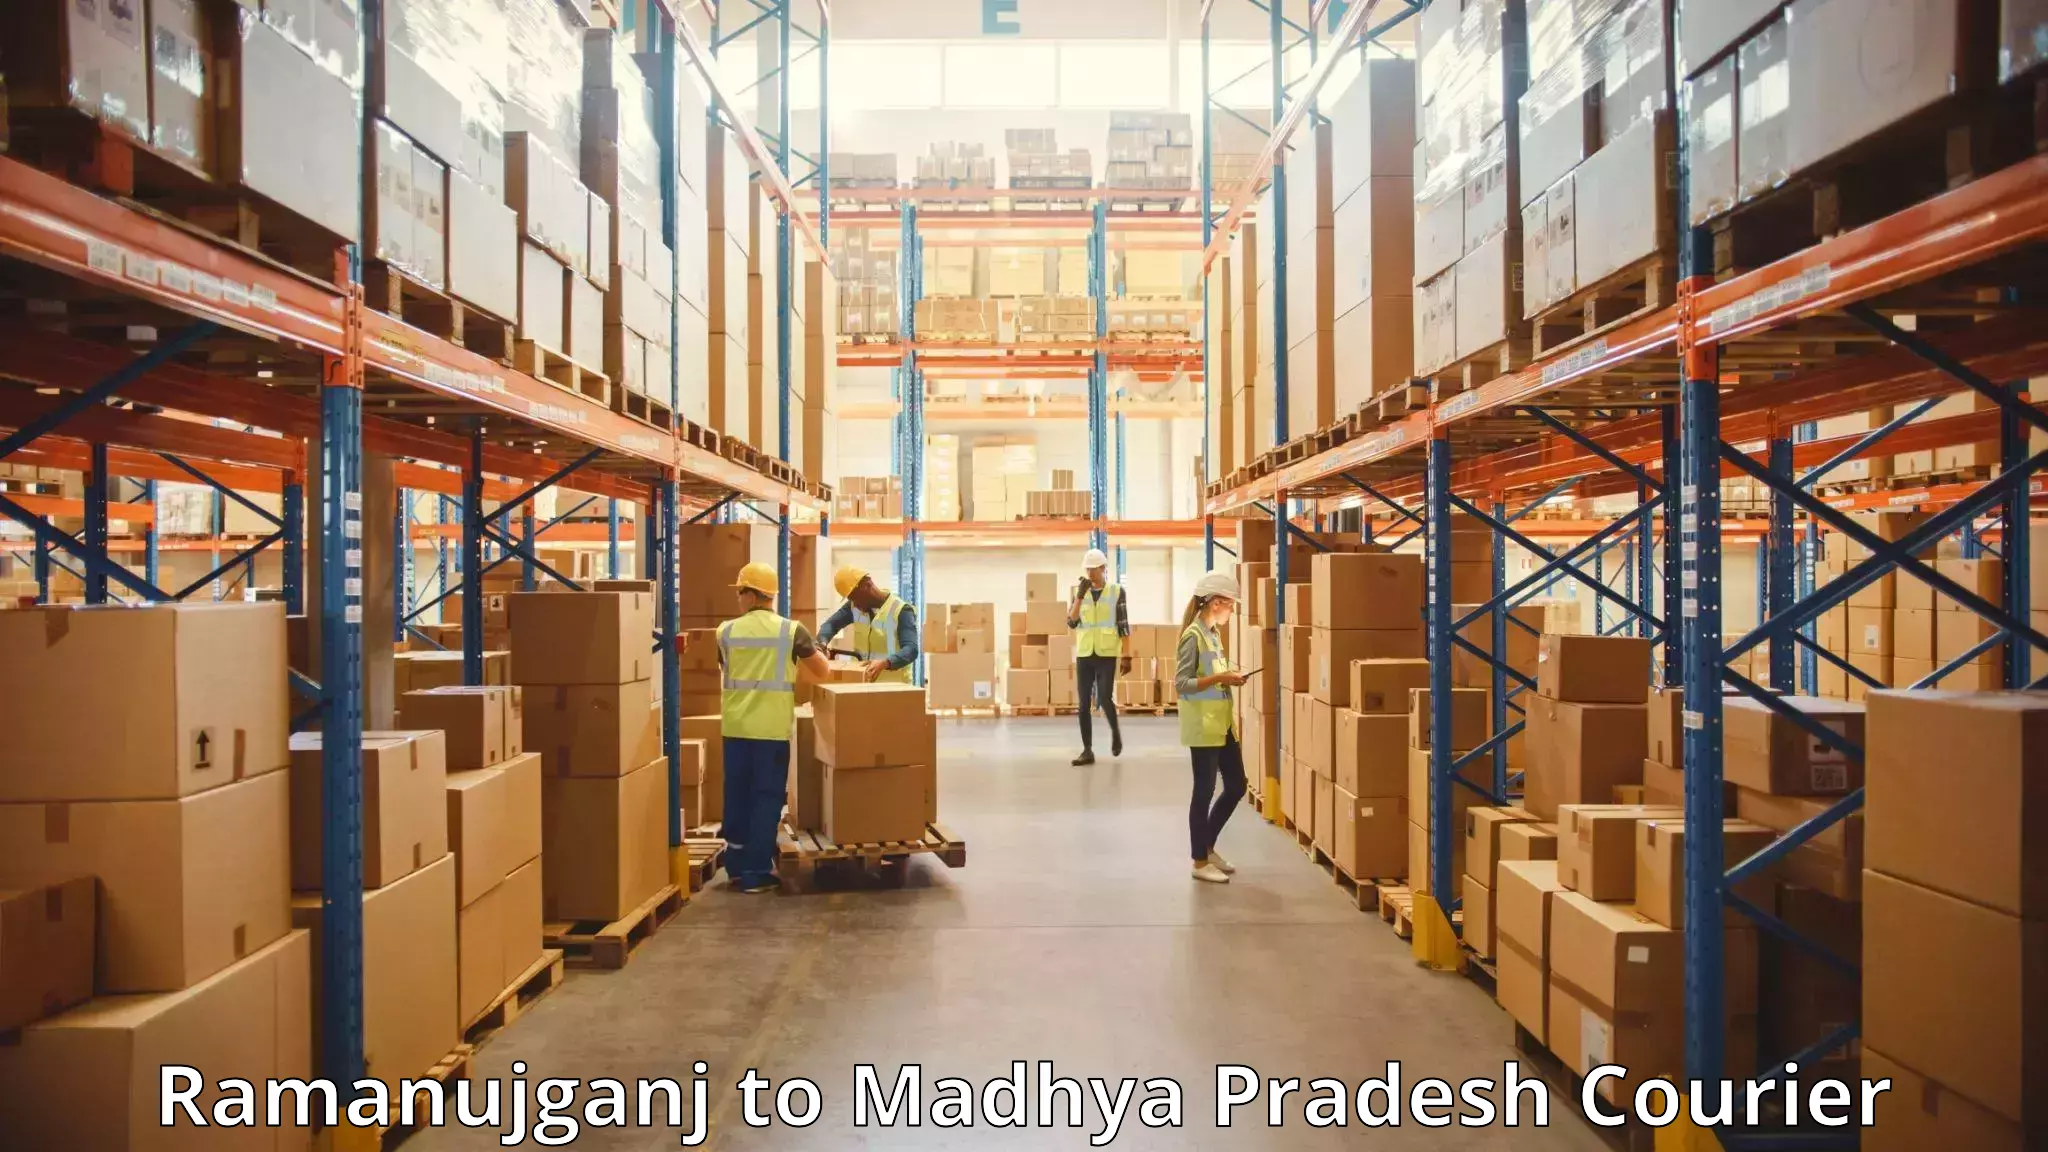 Luggage shipment specialists Ramanujganj to Amarkantak